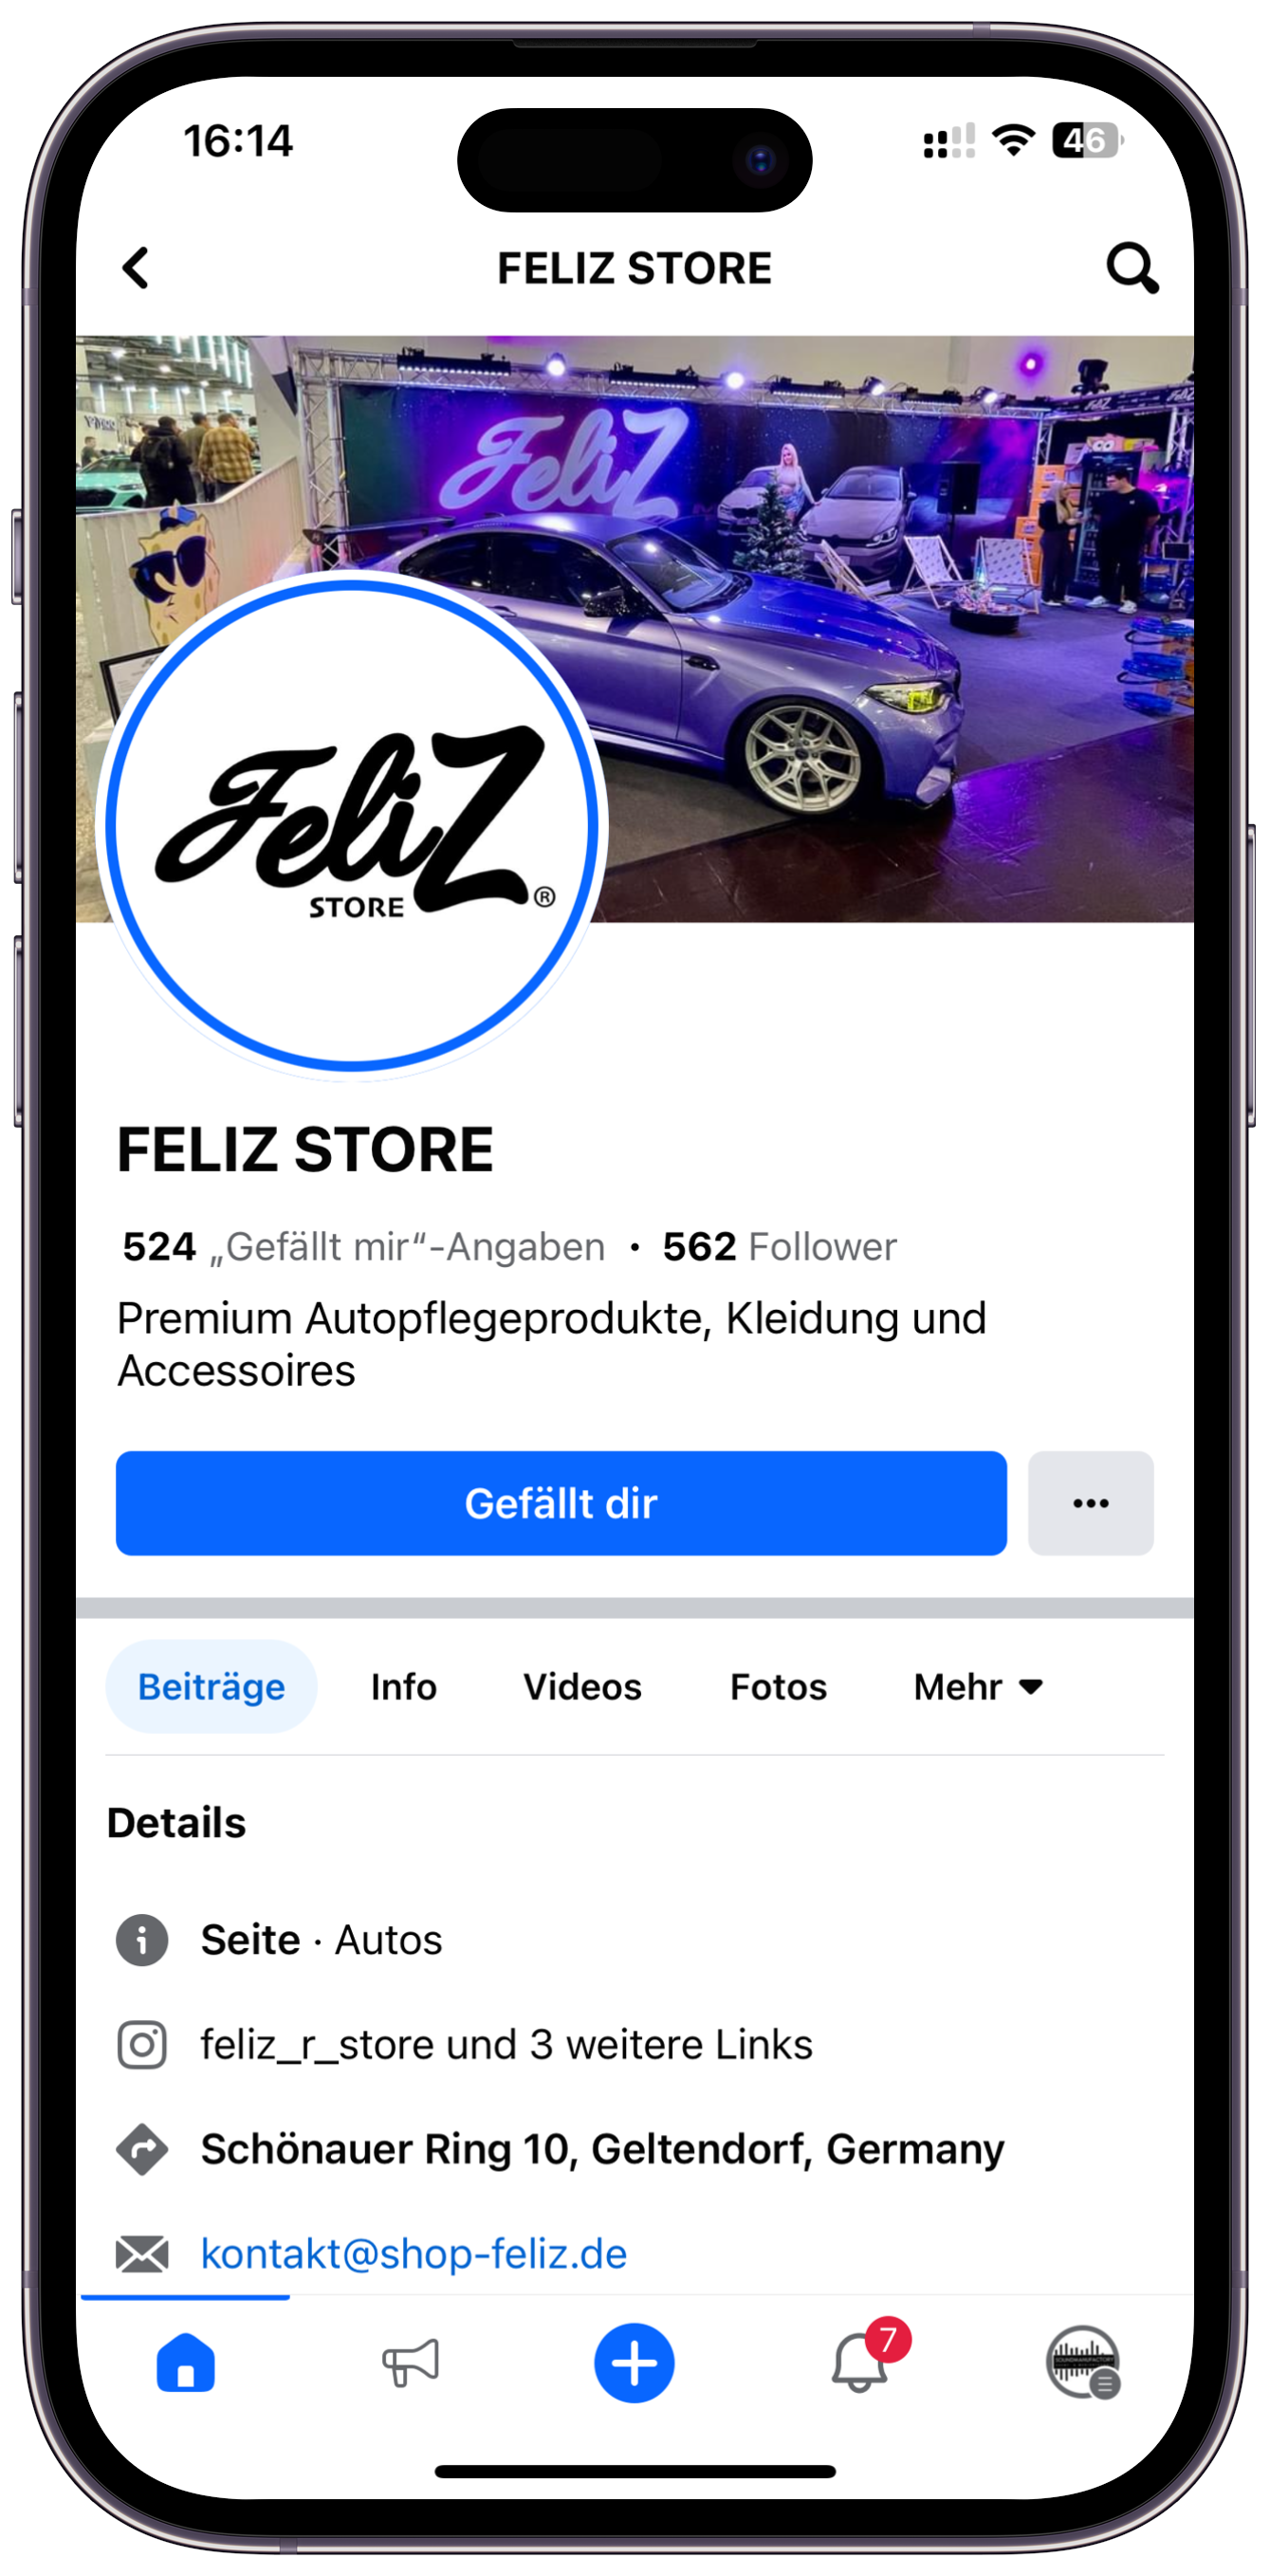 Feliz Store Facbook Site